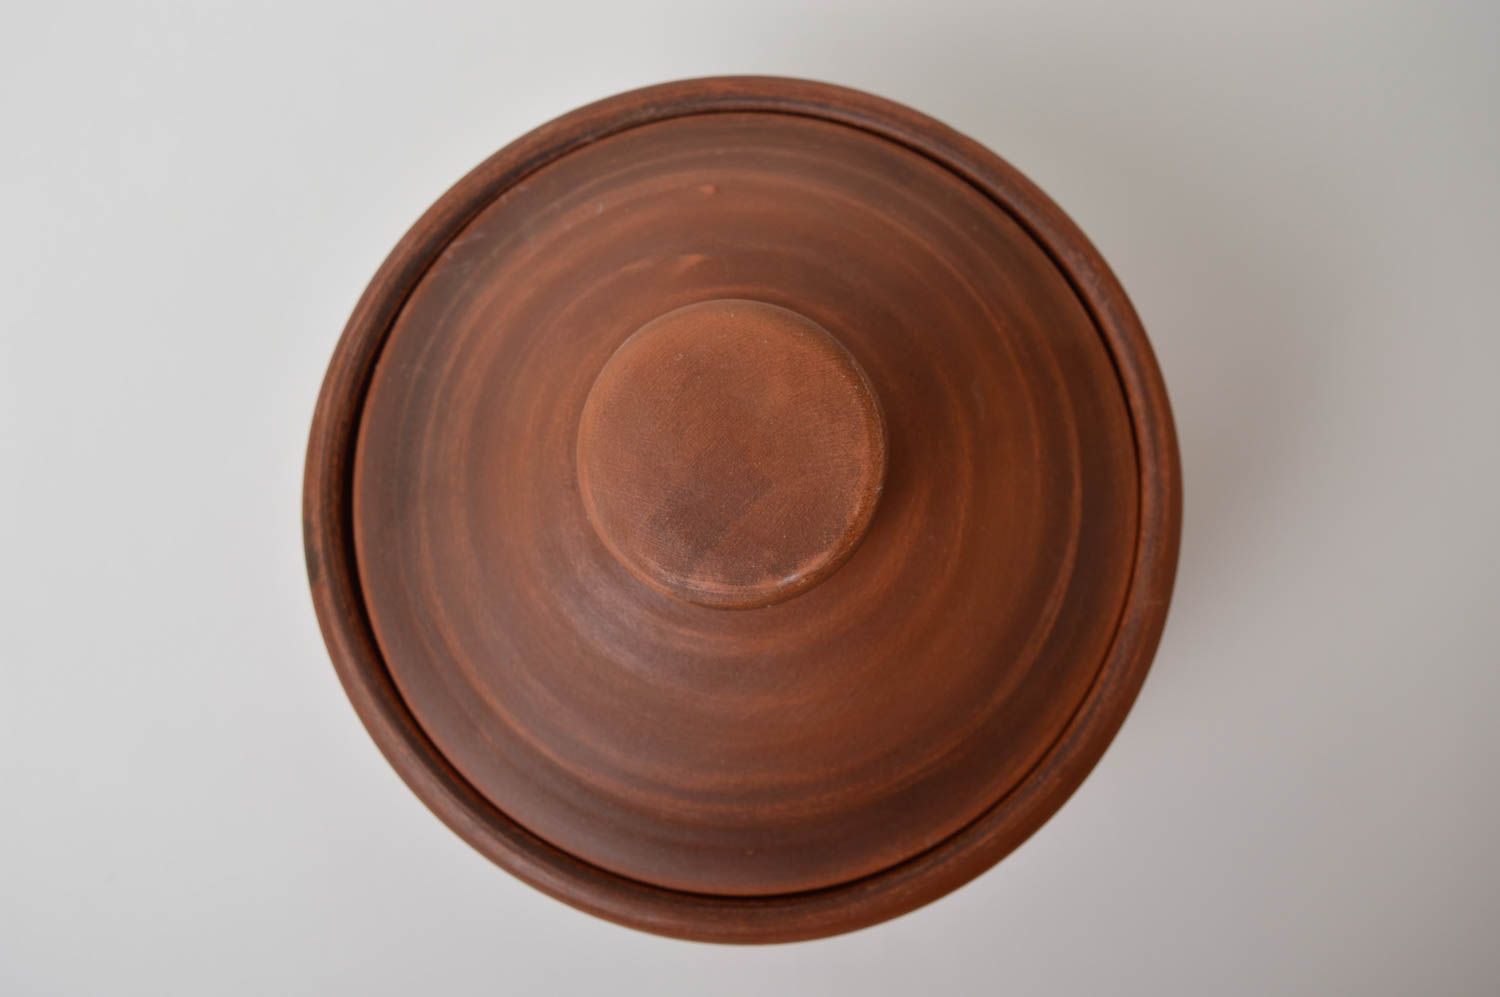 Topf aus Ton handmade Deko für Küche Keramik Geschirr im Öko Style schön foto 5